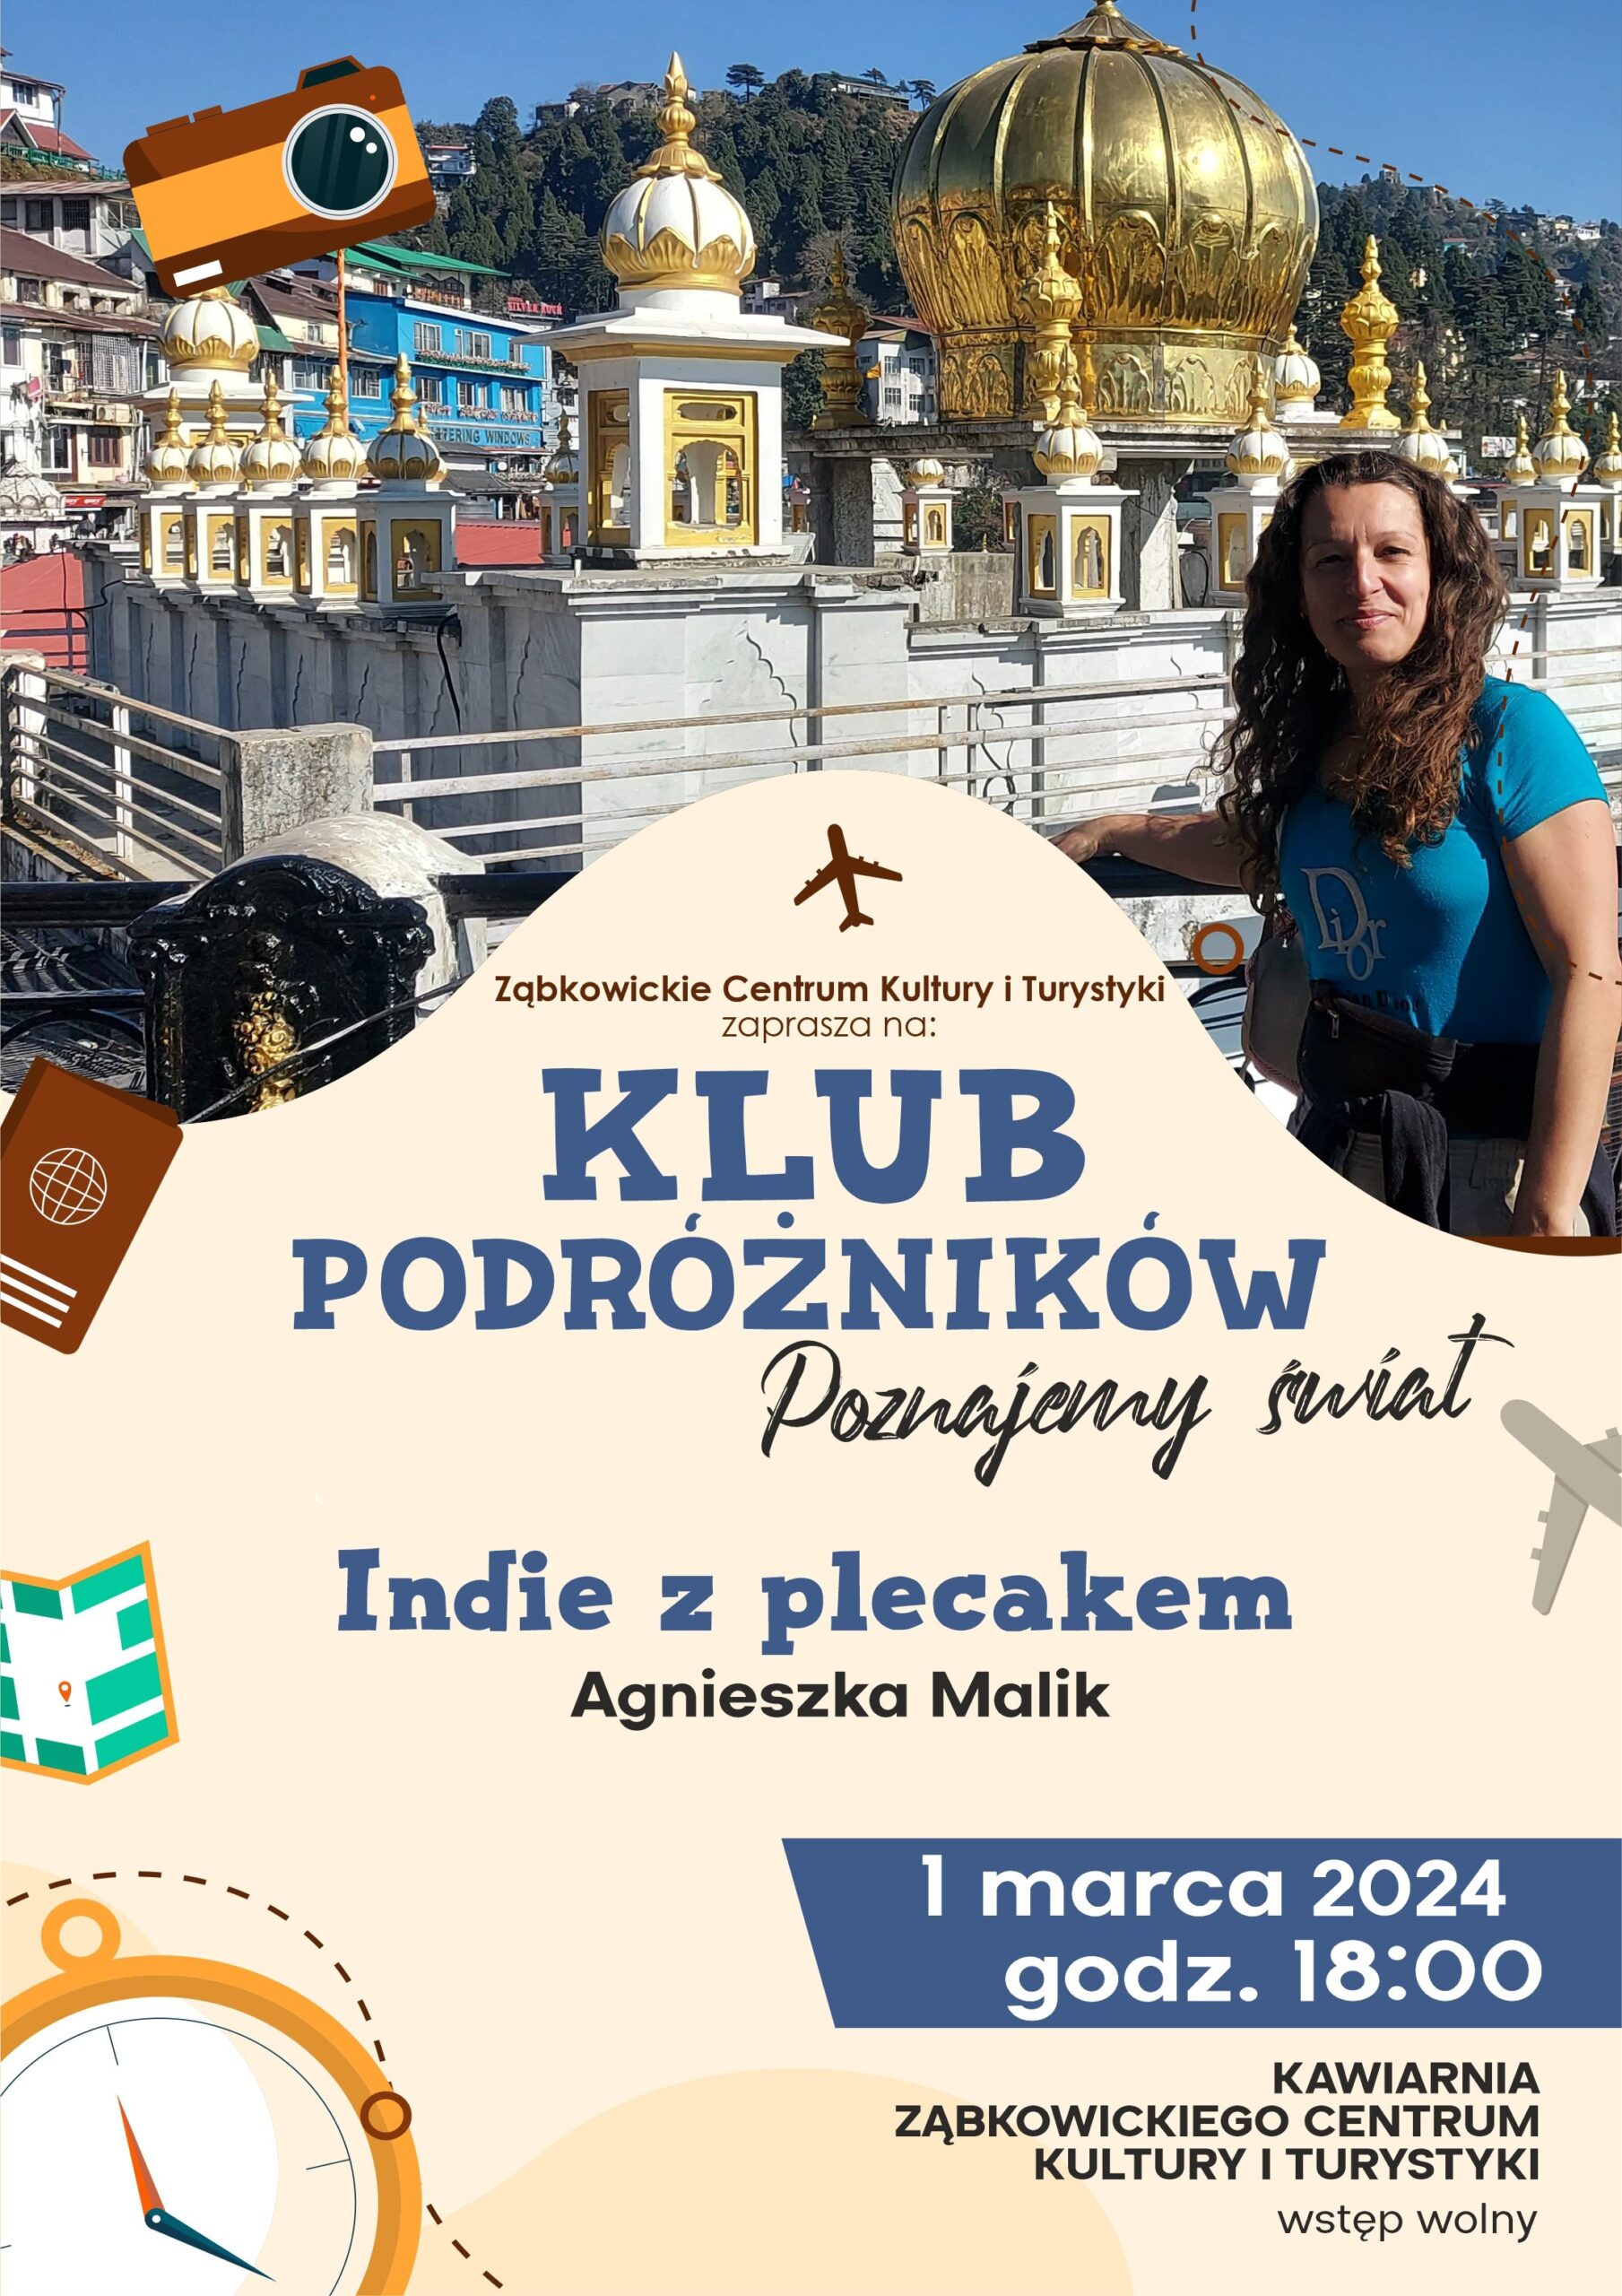 Plakat informujący o spotkaniu z Agnieszką Malik w Klubie Podróżników 1 marca 20214 o godzinie 18:00 w kawiarni Ząbkowickiego Centrum Kultury i Turystyki.